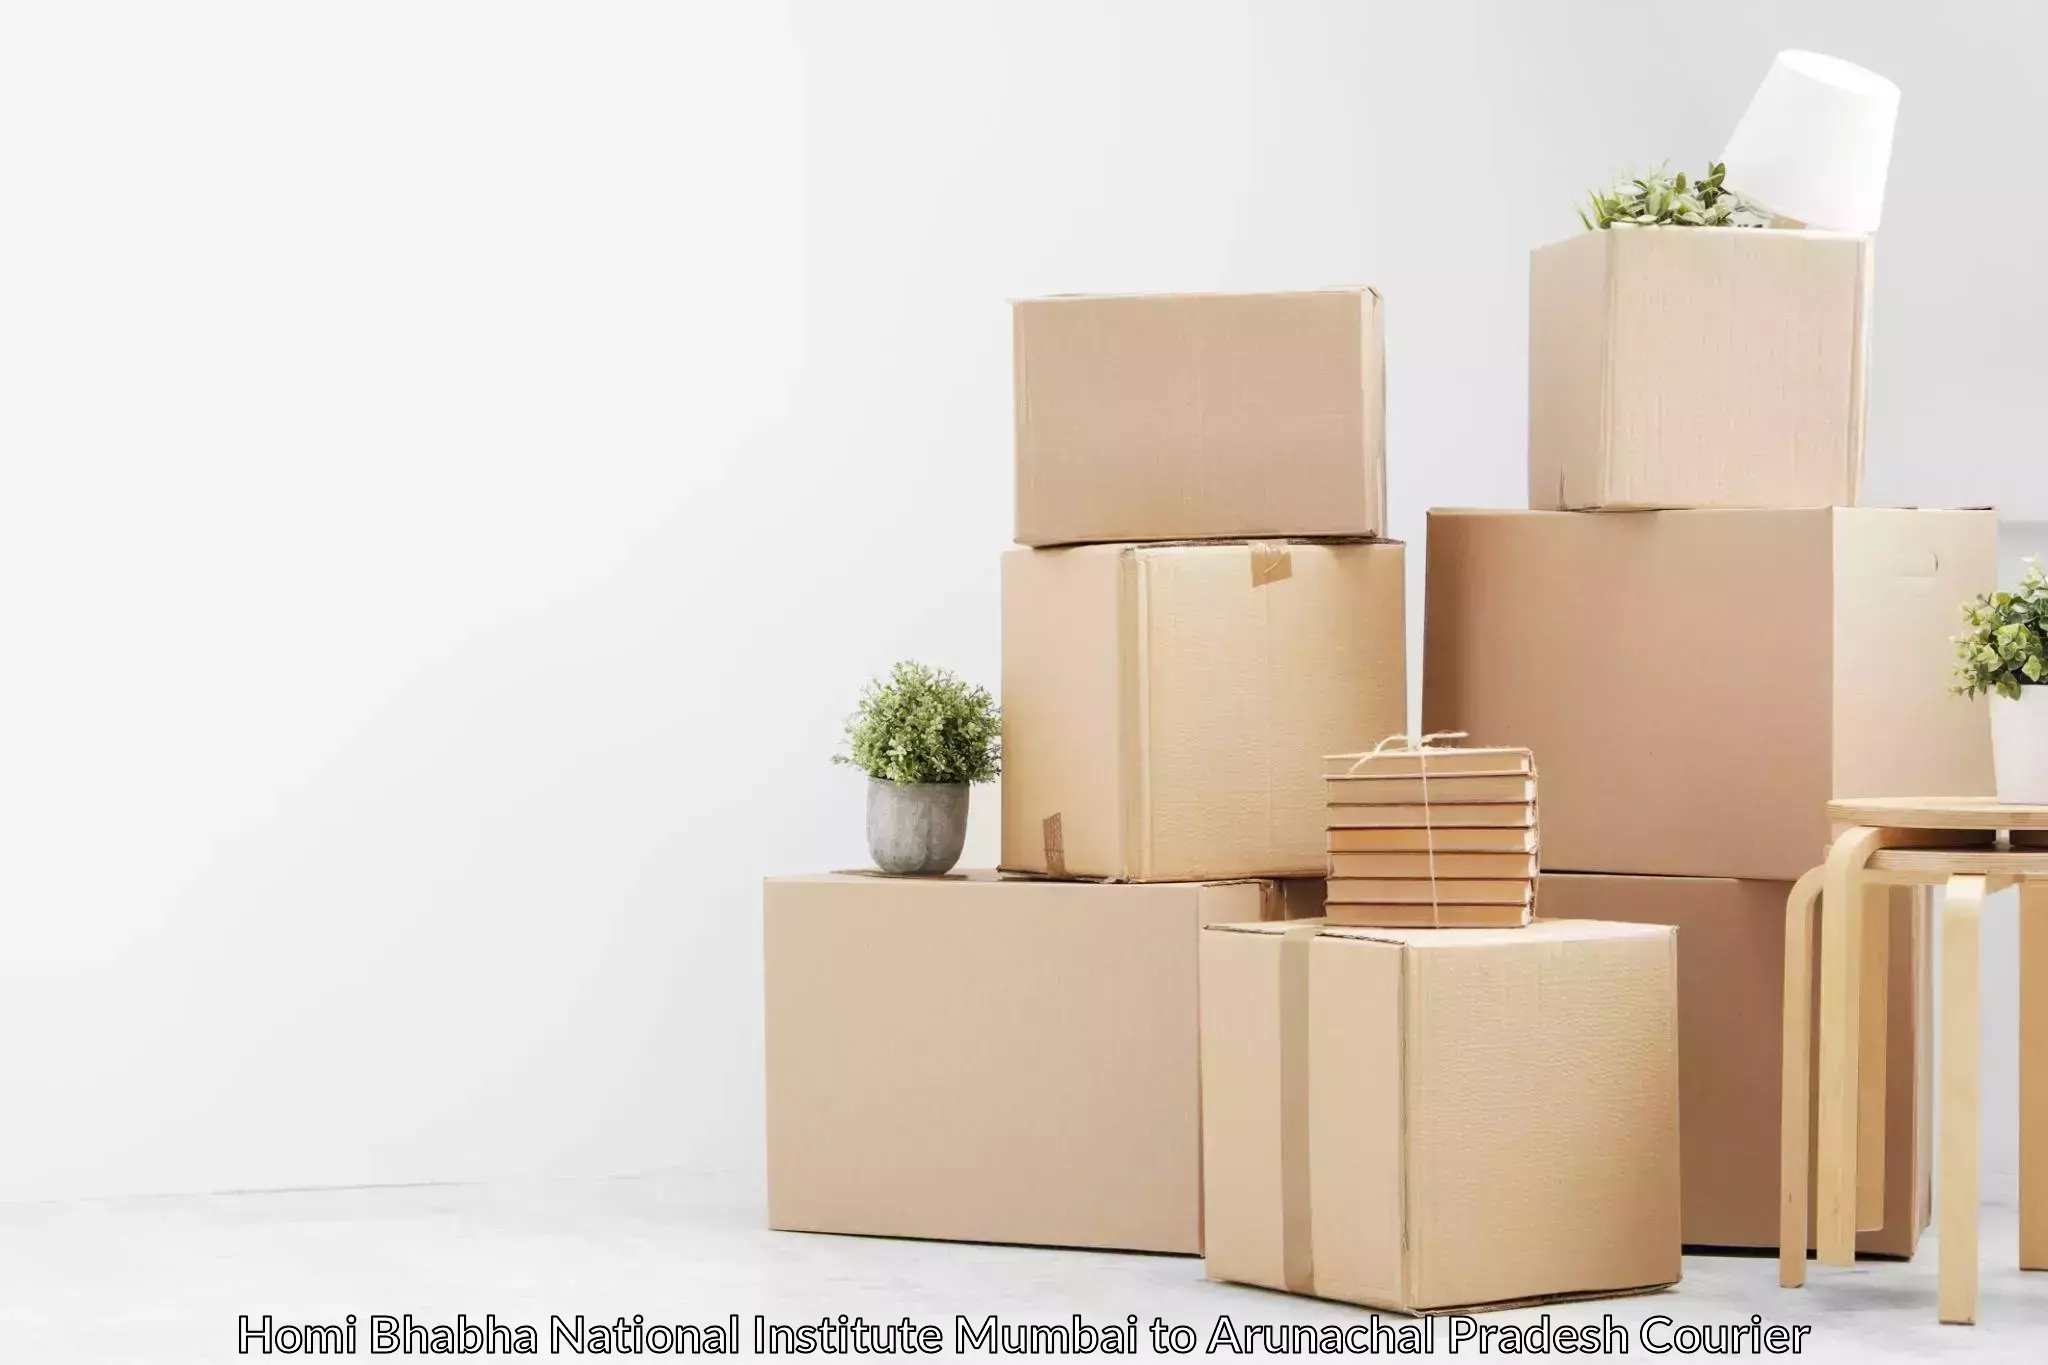 Home relocation experts Homi Bhabha National Institute Mumbai to Lohit